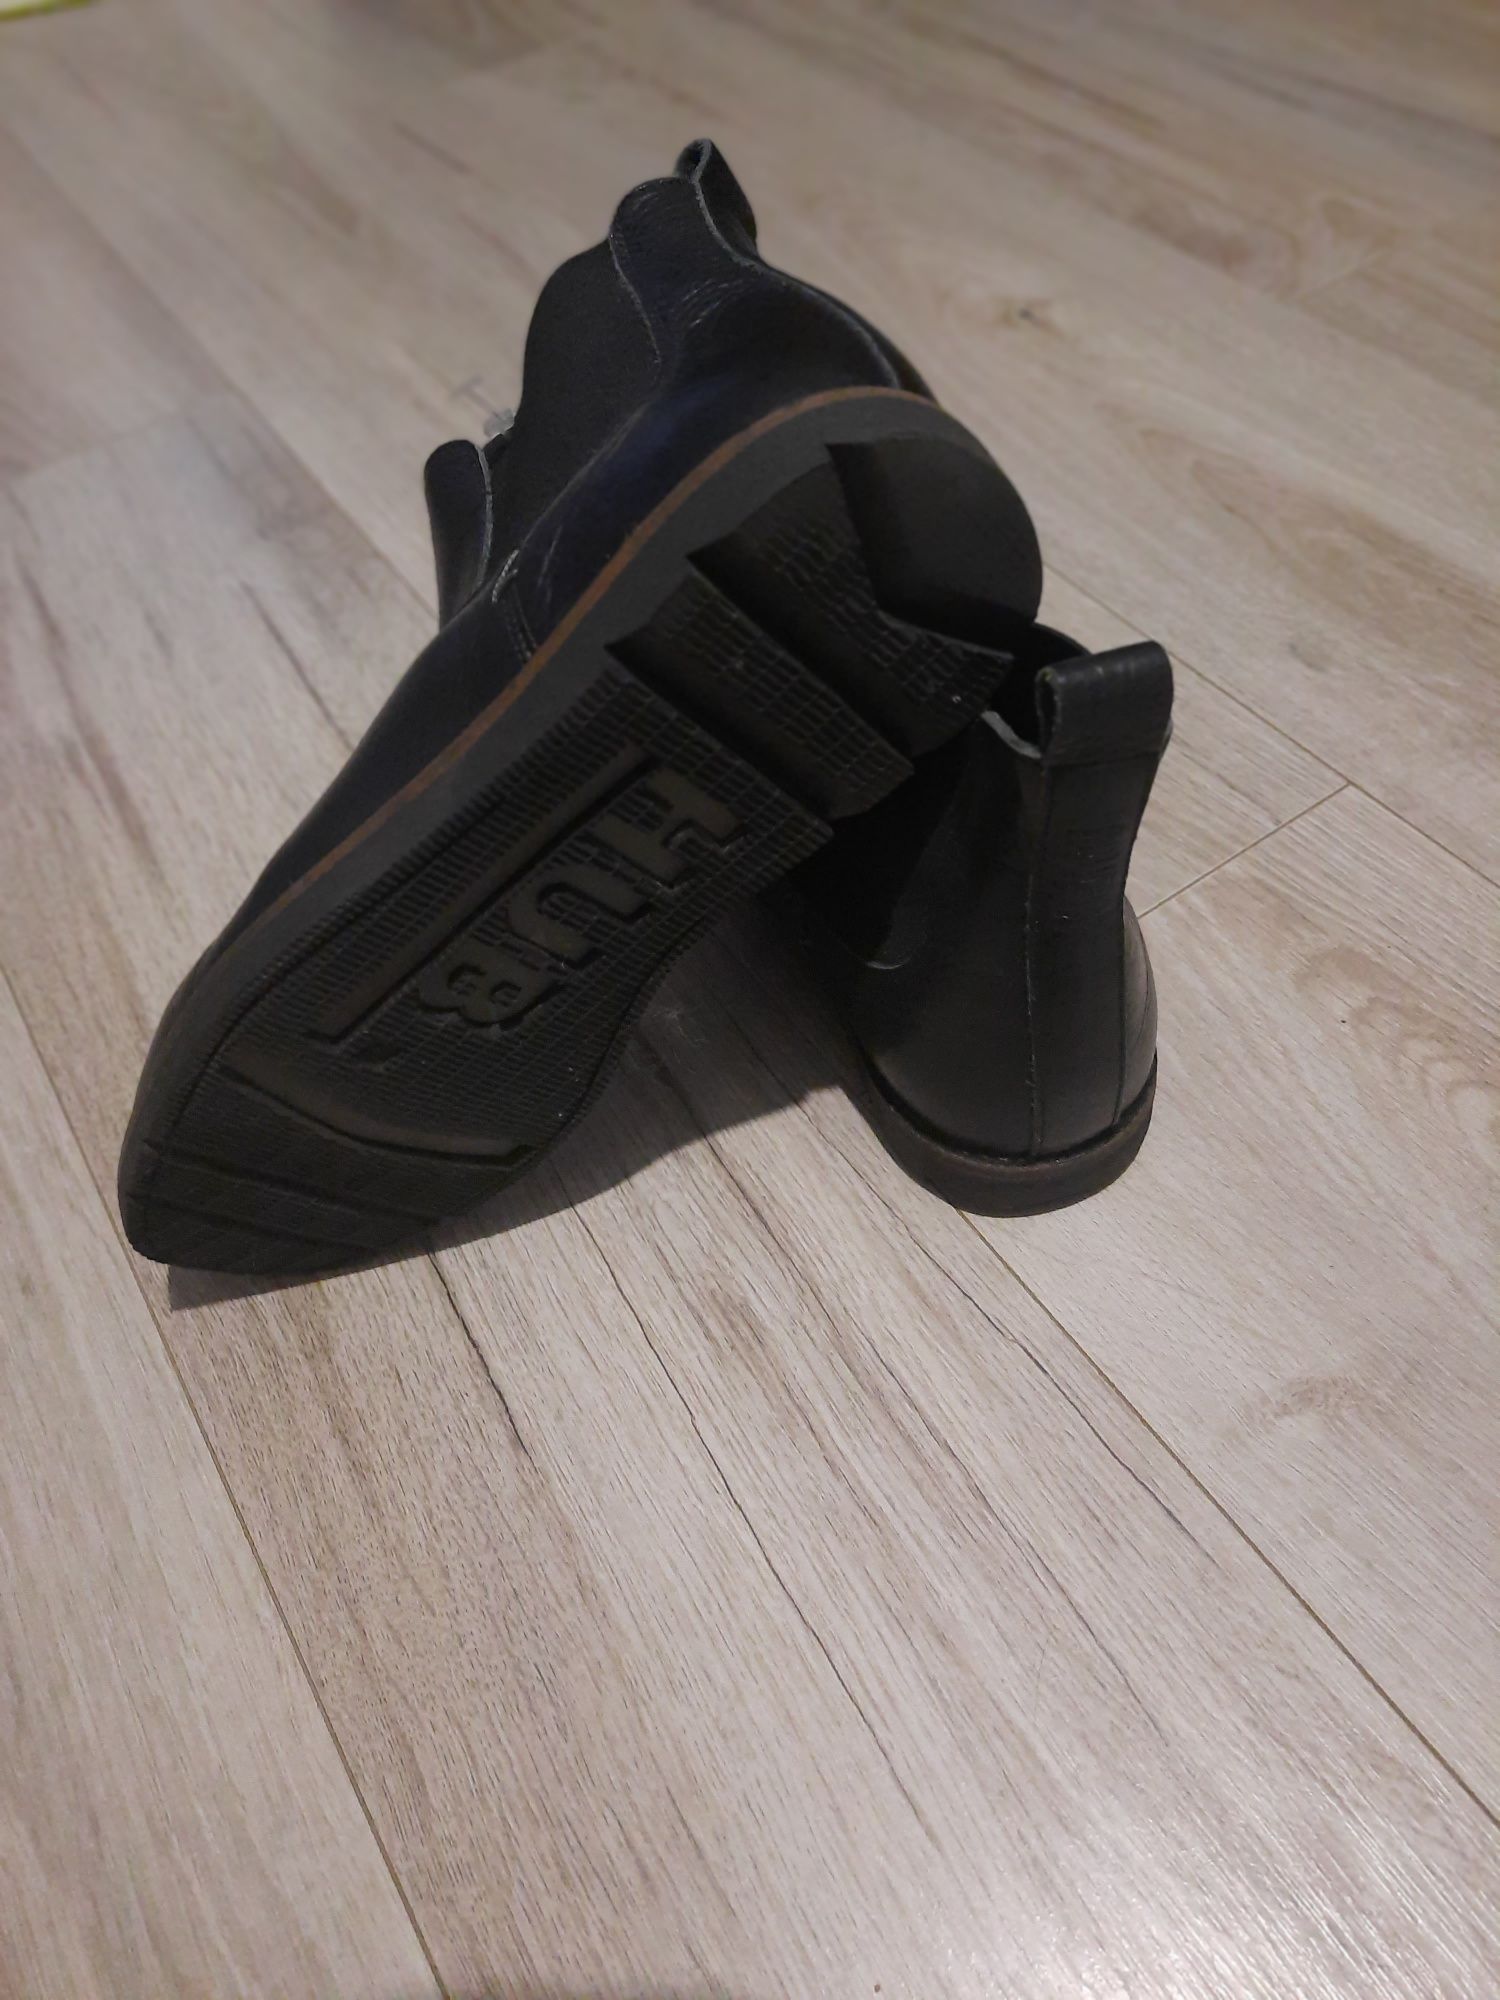 Челси, ботинки кожаные Hub,41 размер